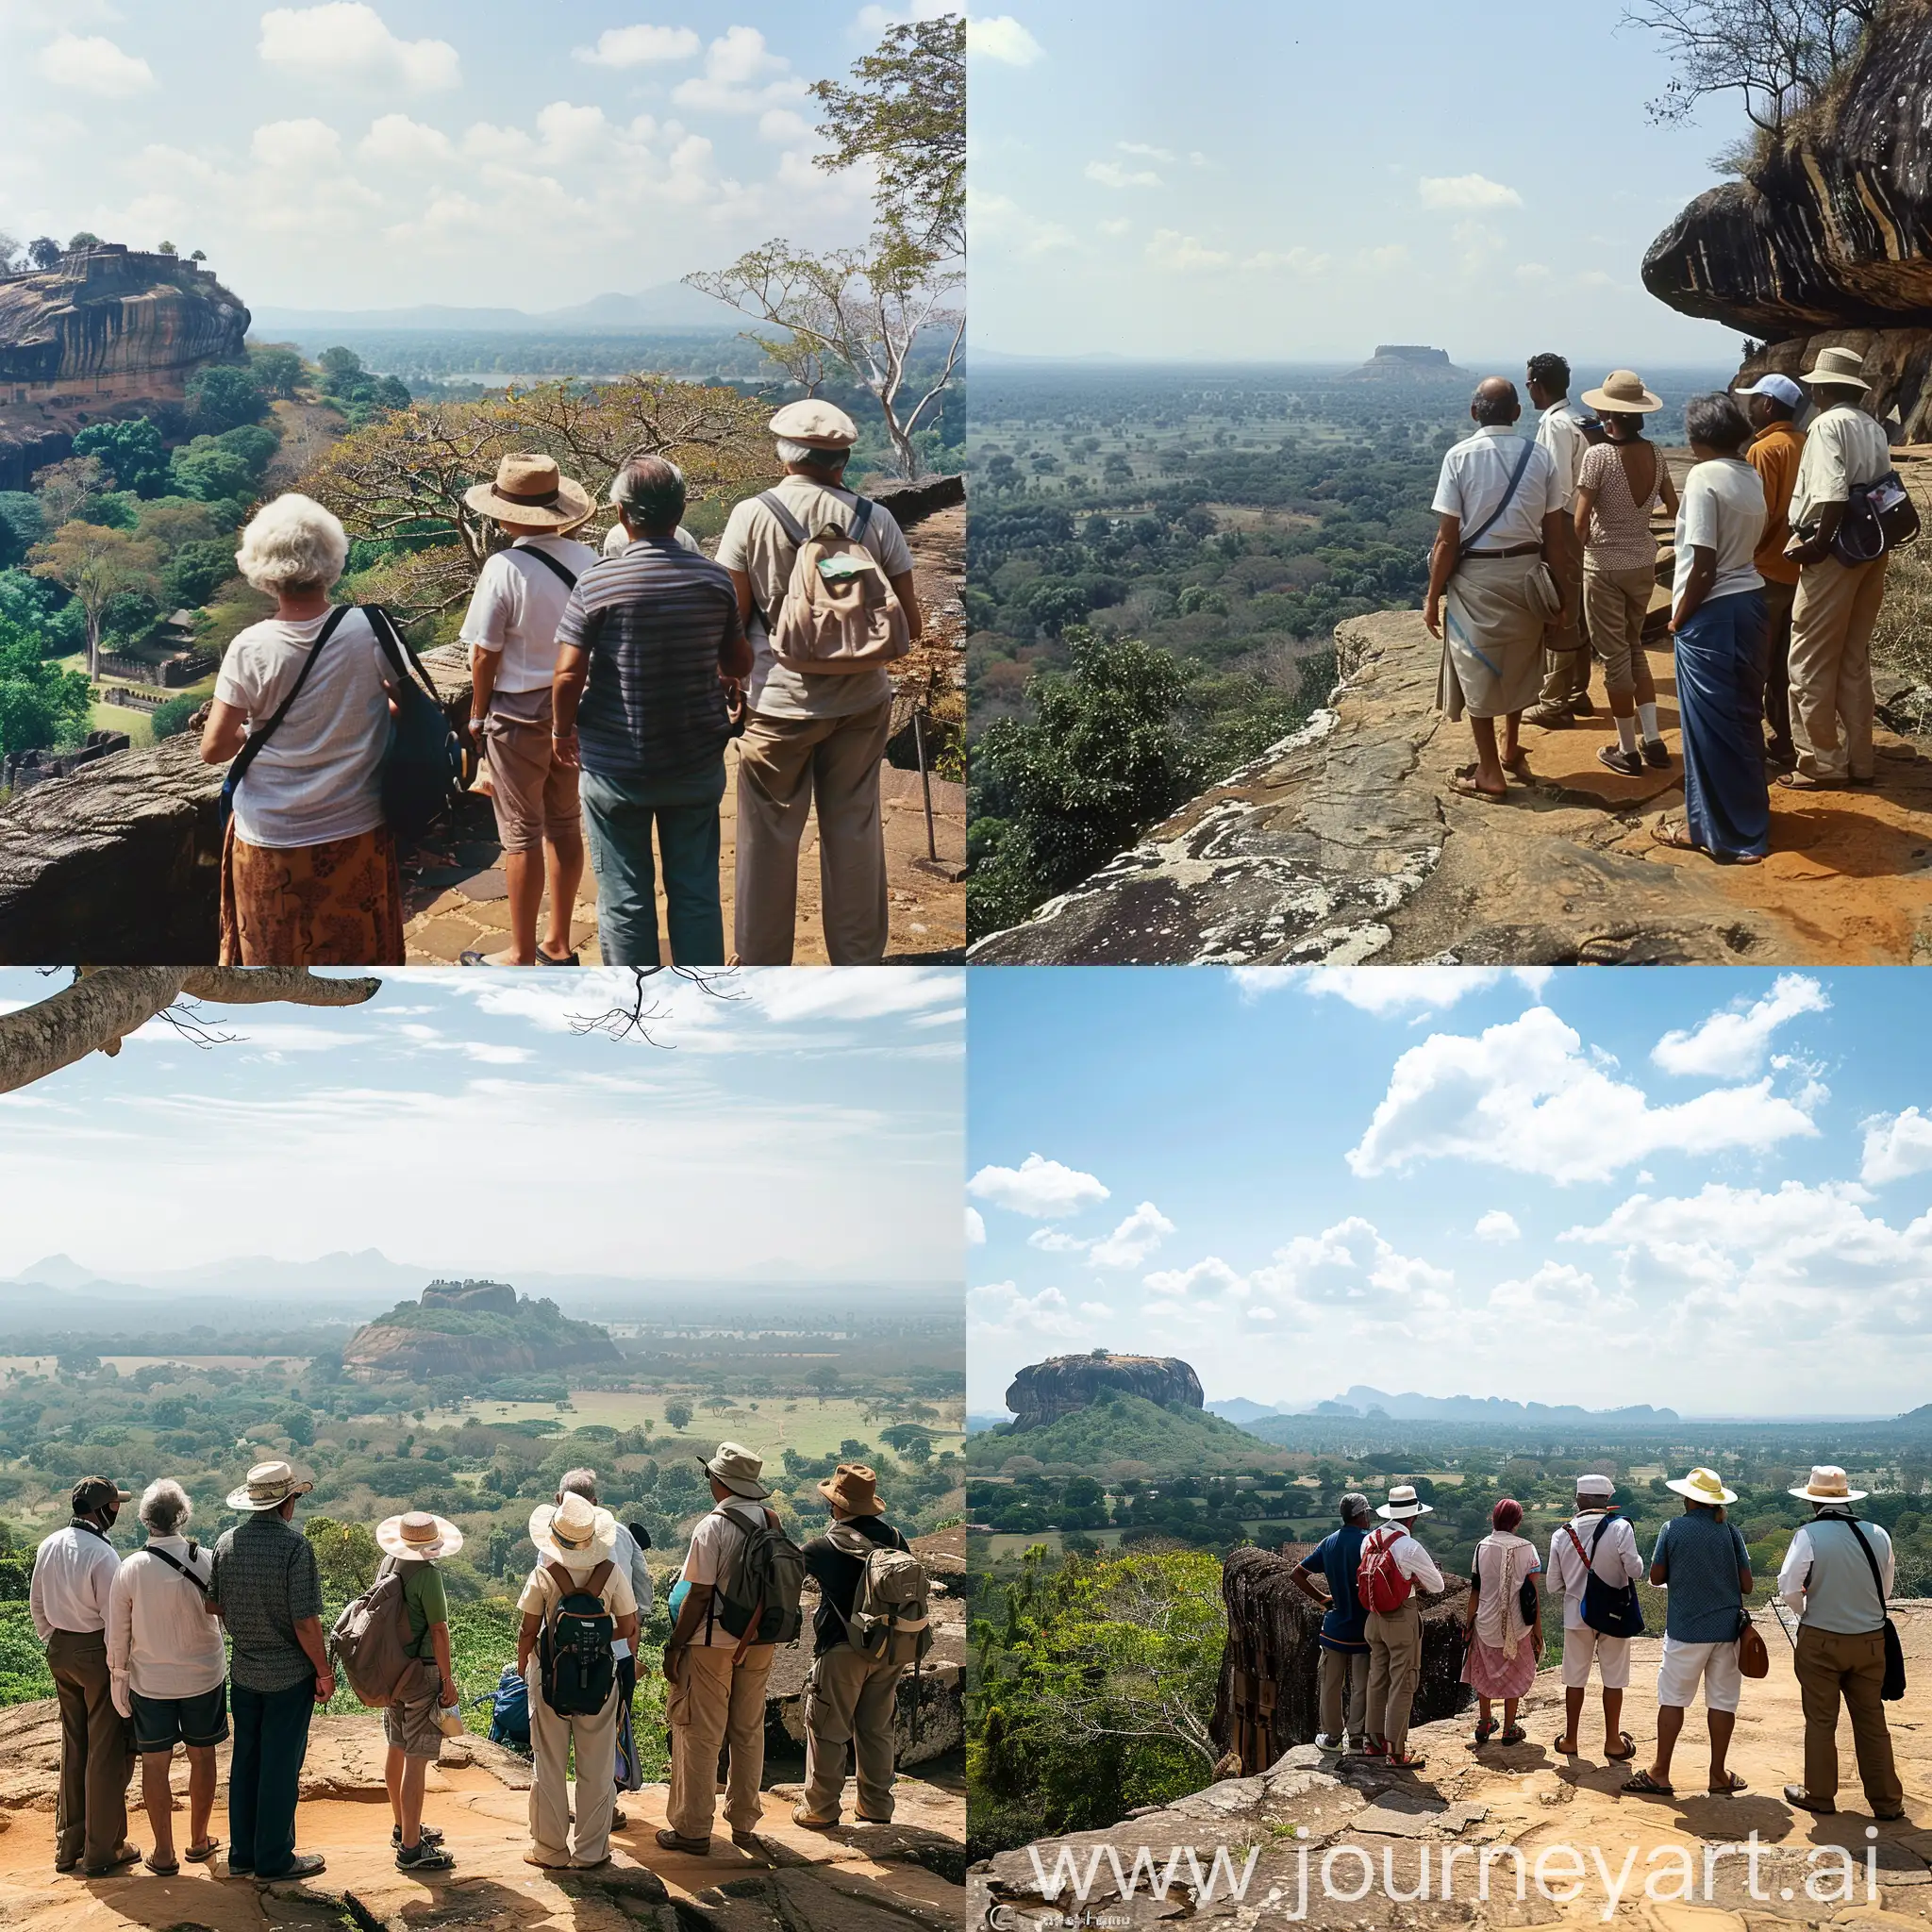 A group of tourists visiting sigiriya